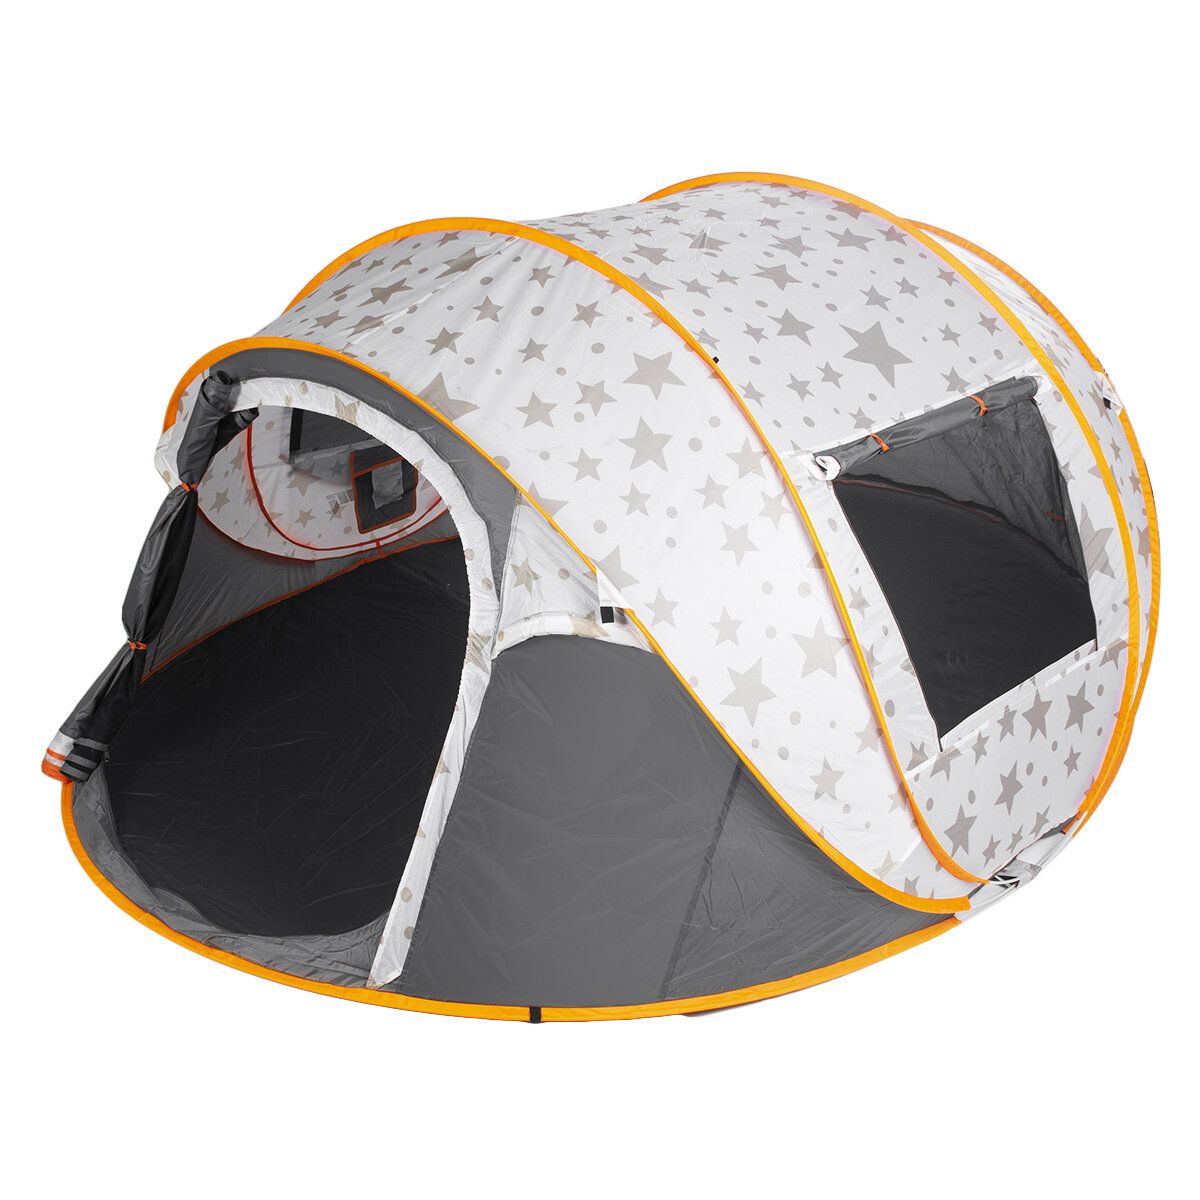 ürkçe: 5-6 Kişilik Kamp Çadırı Plaj Çadırı Aile Güneşlik Çift Kapılı Otomatik Kanopi Açık Hava Seyahati